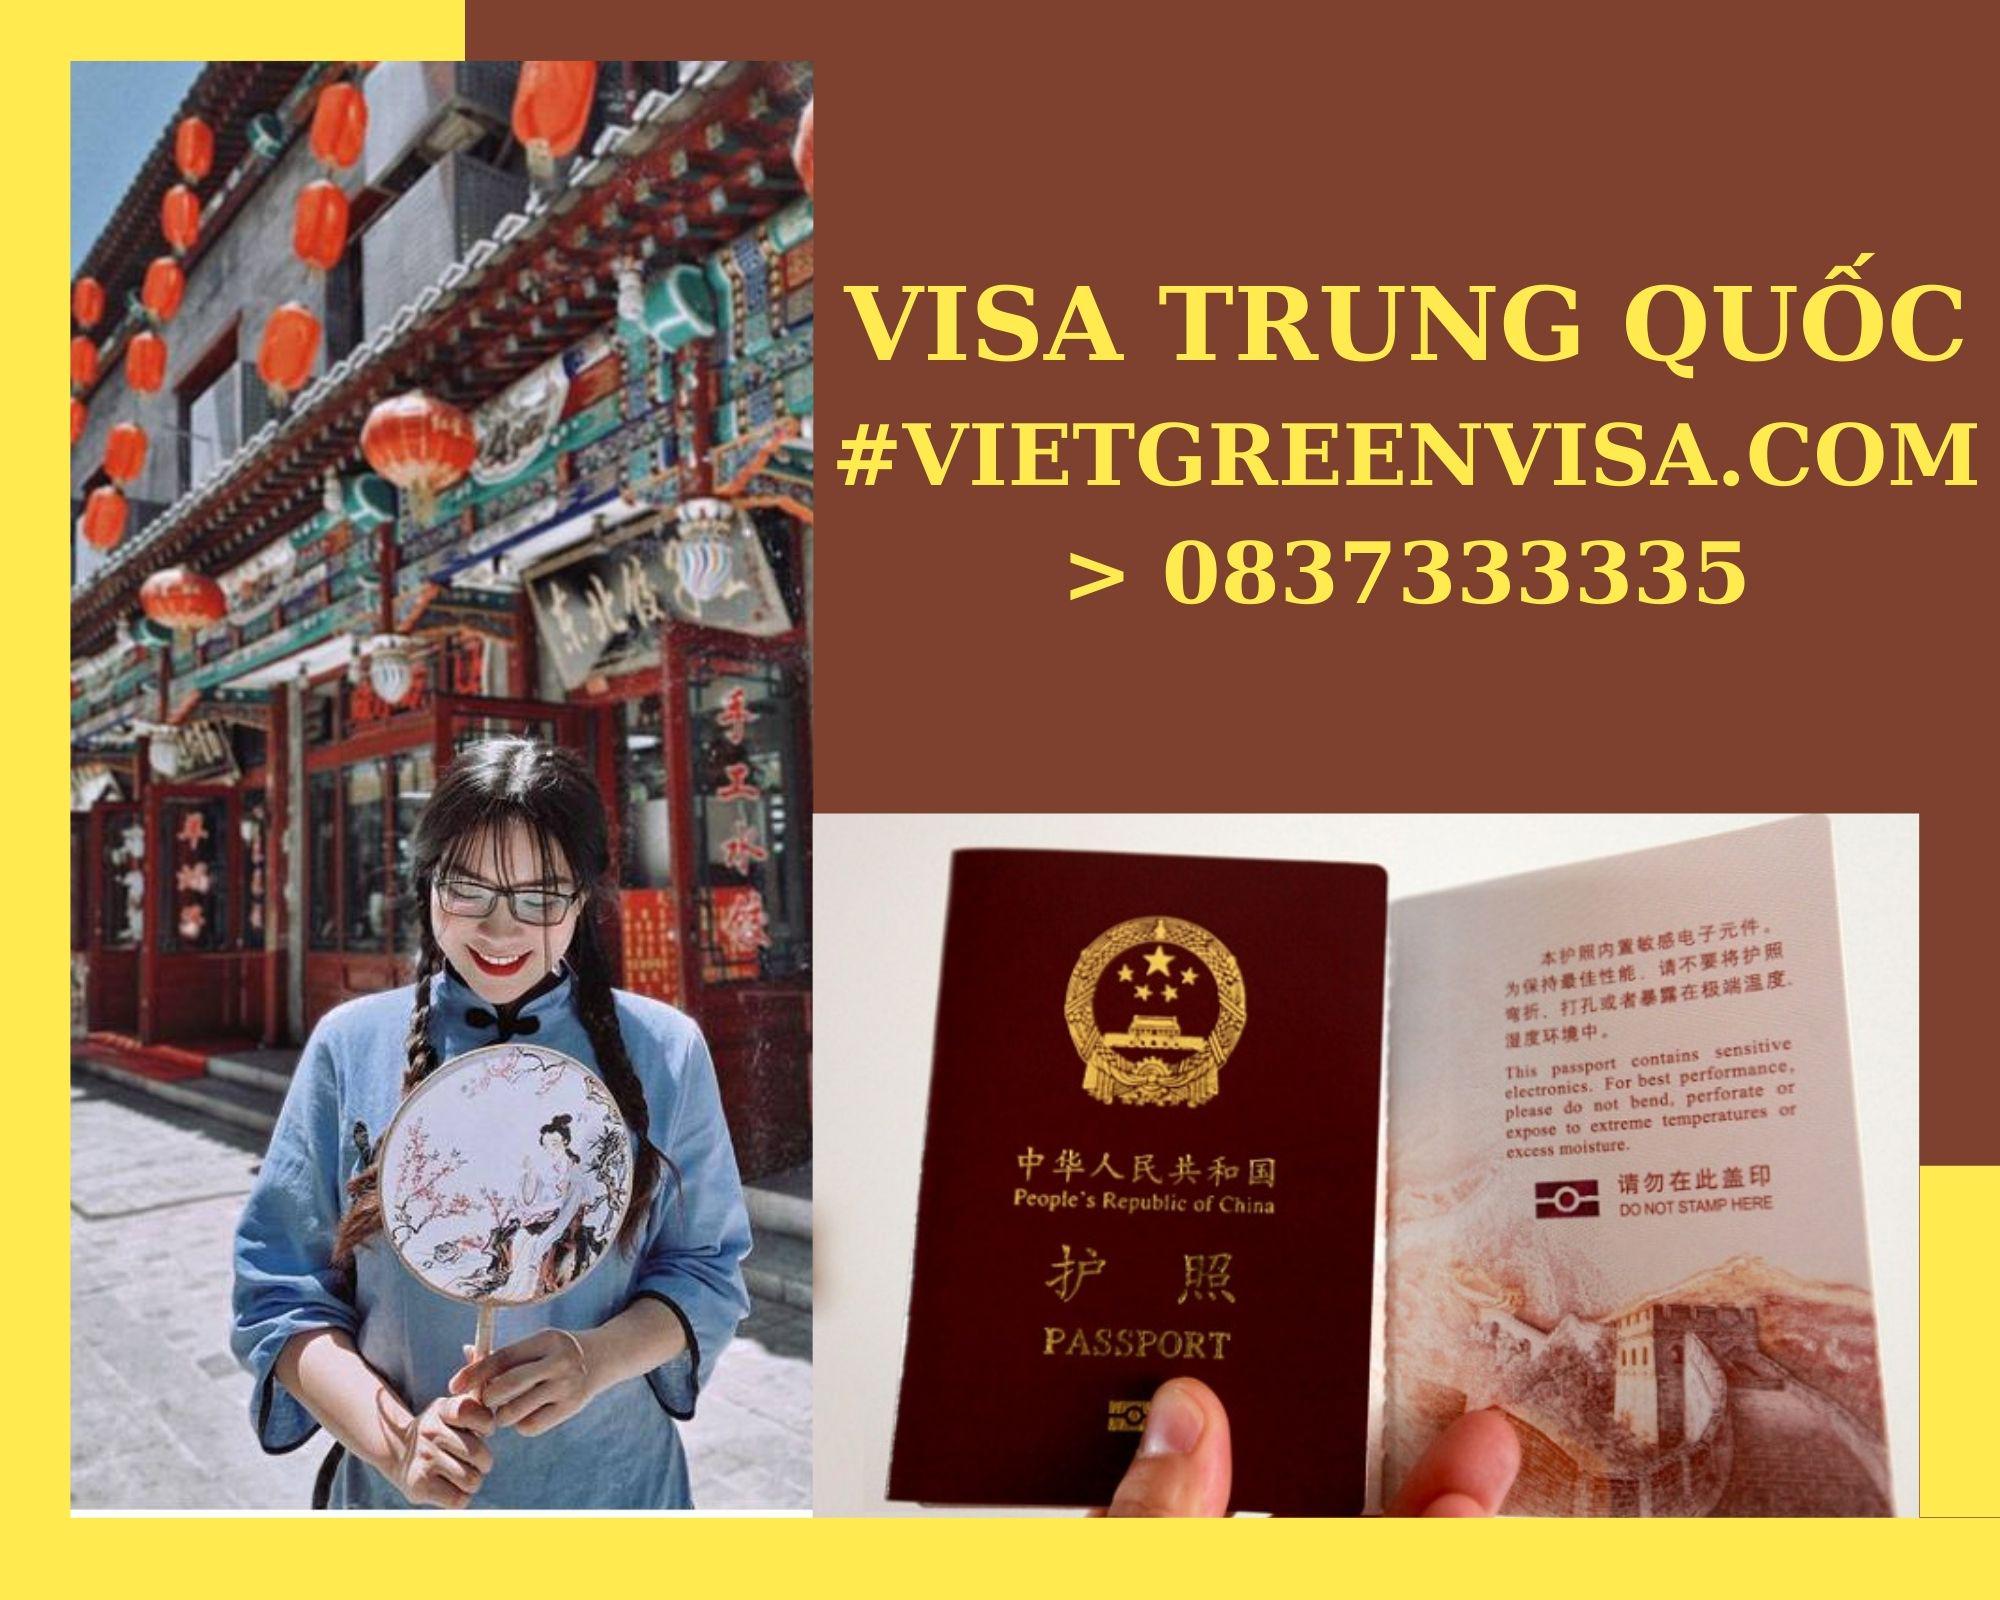 Dịch vụ visa Trung Quốc công tác giá rẻ. Viet Green visa